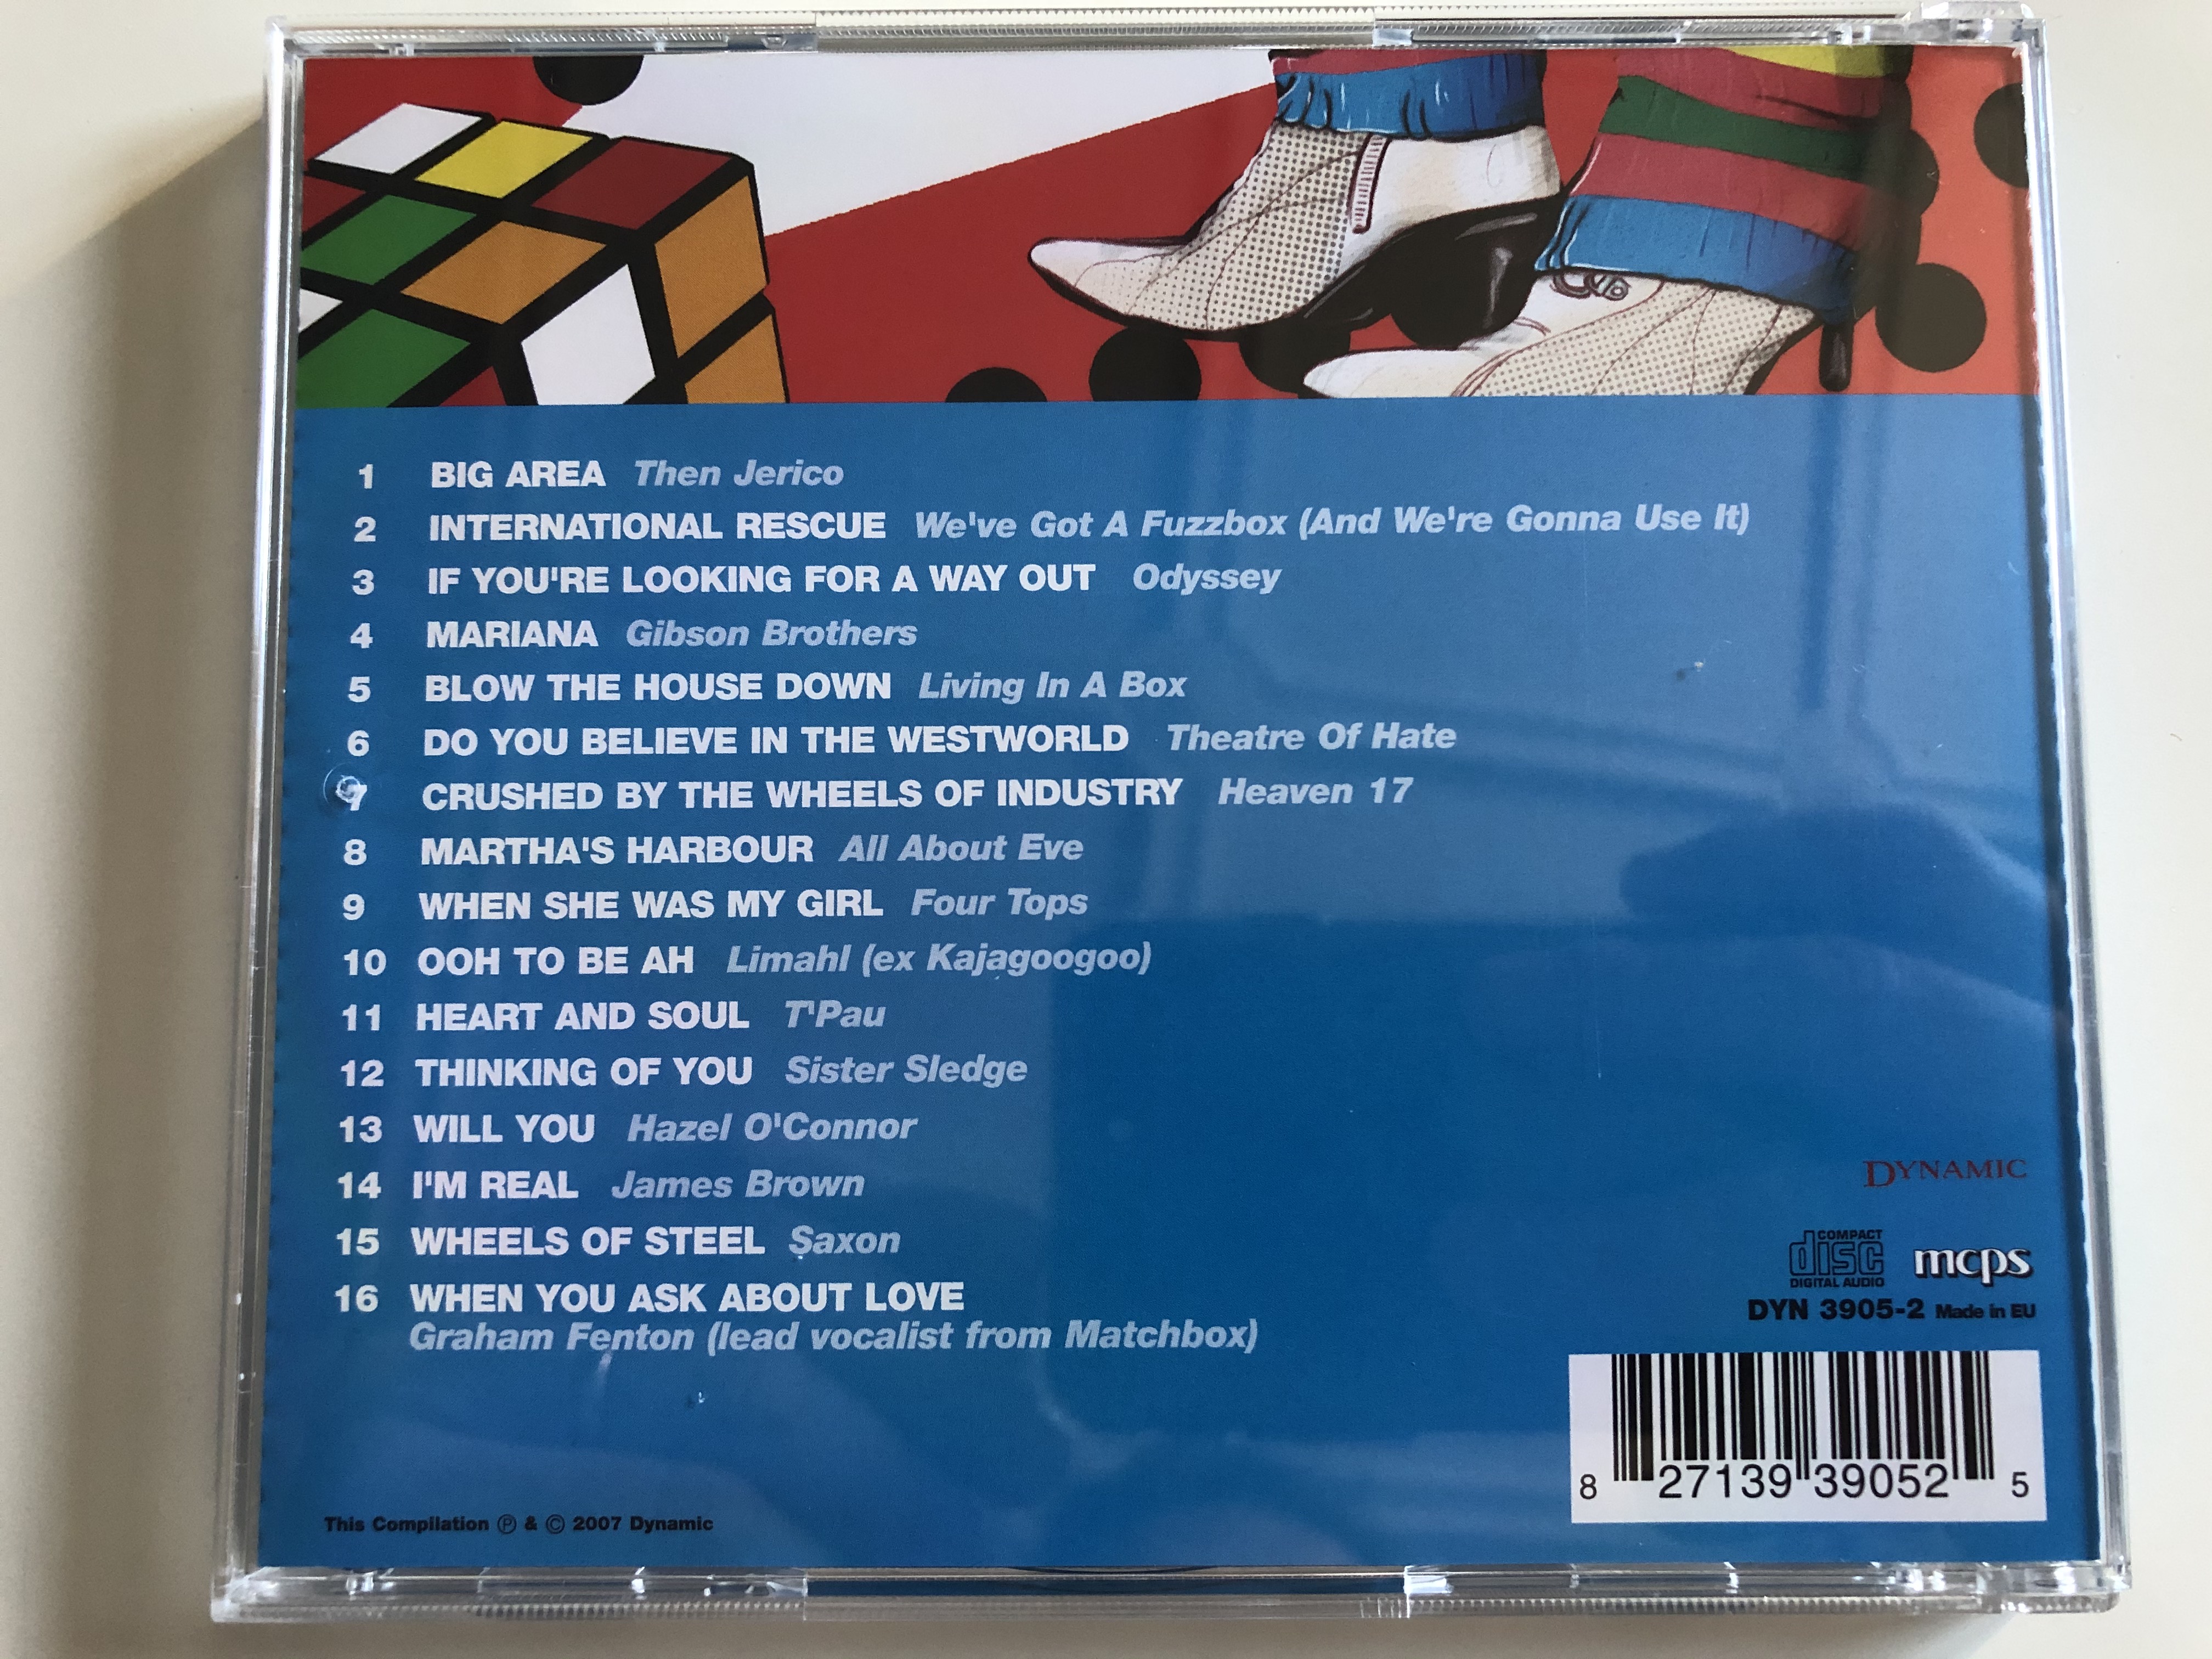 eighties-hits-cd-2-dynamic-audio-cd-2007-dyn-3905-2-4-.jpg